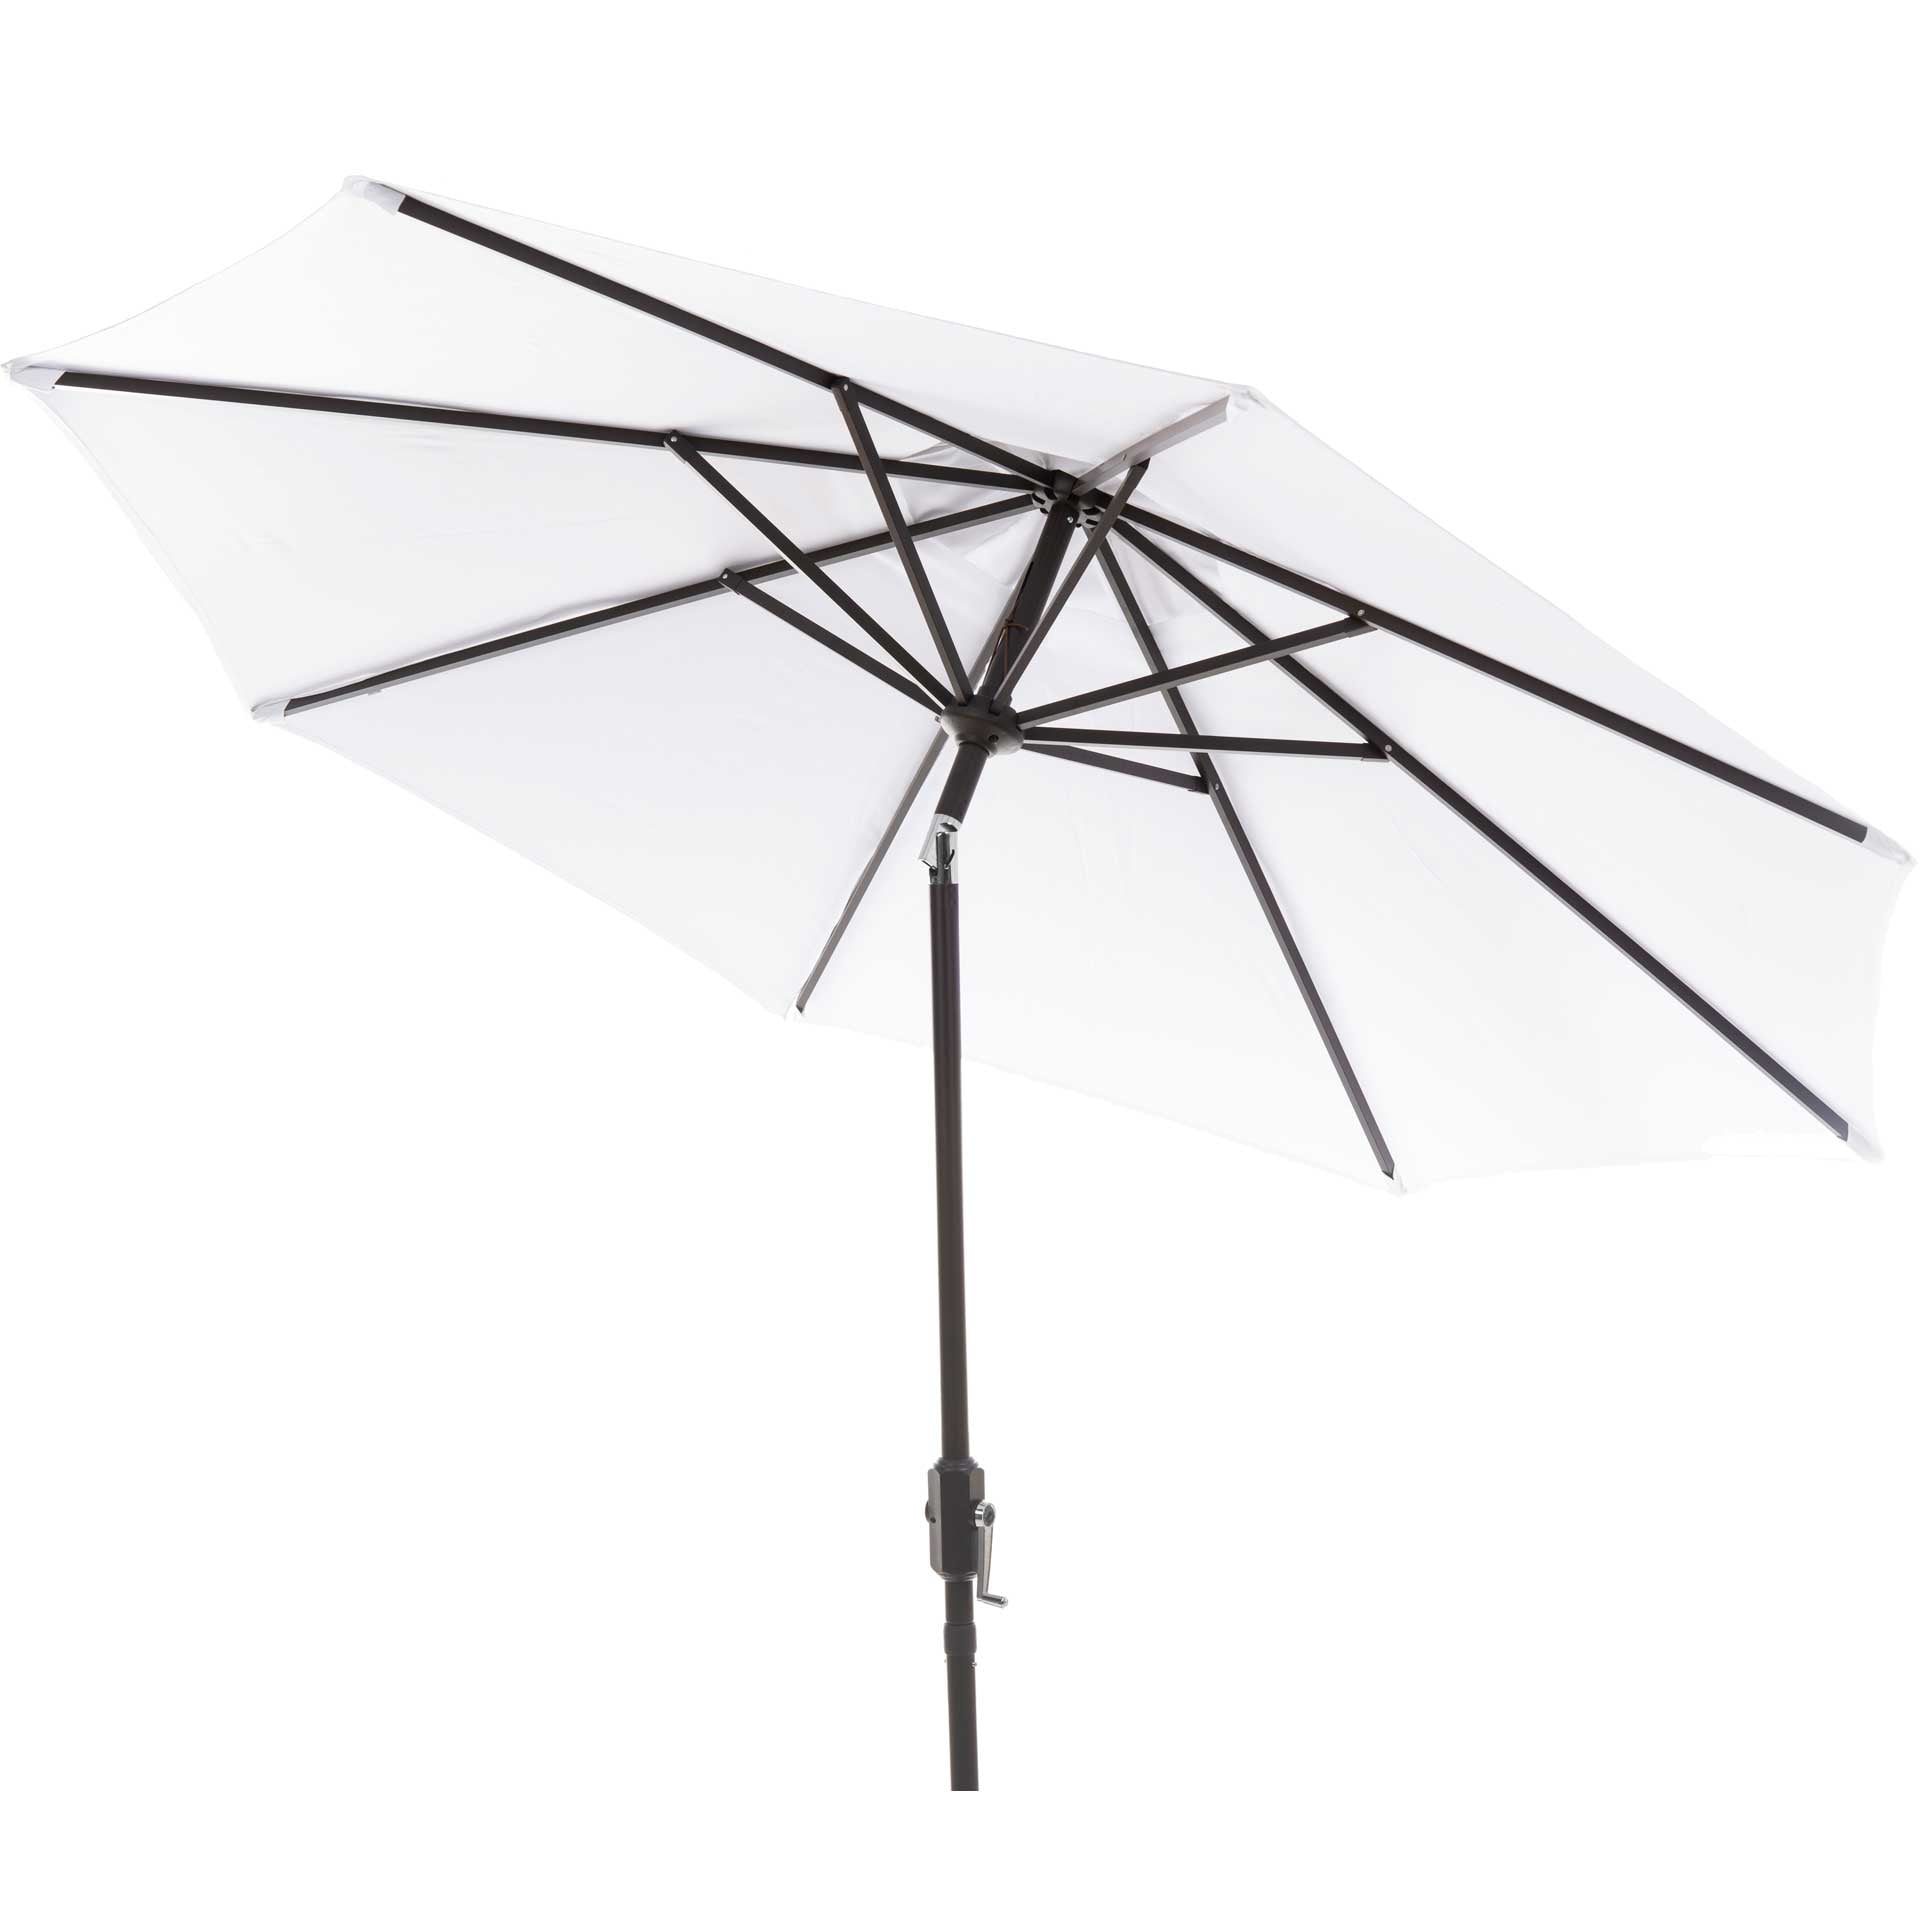 Orna Uv Resistant Auto Tilt Crank Umbrella White